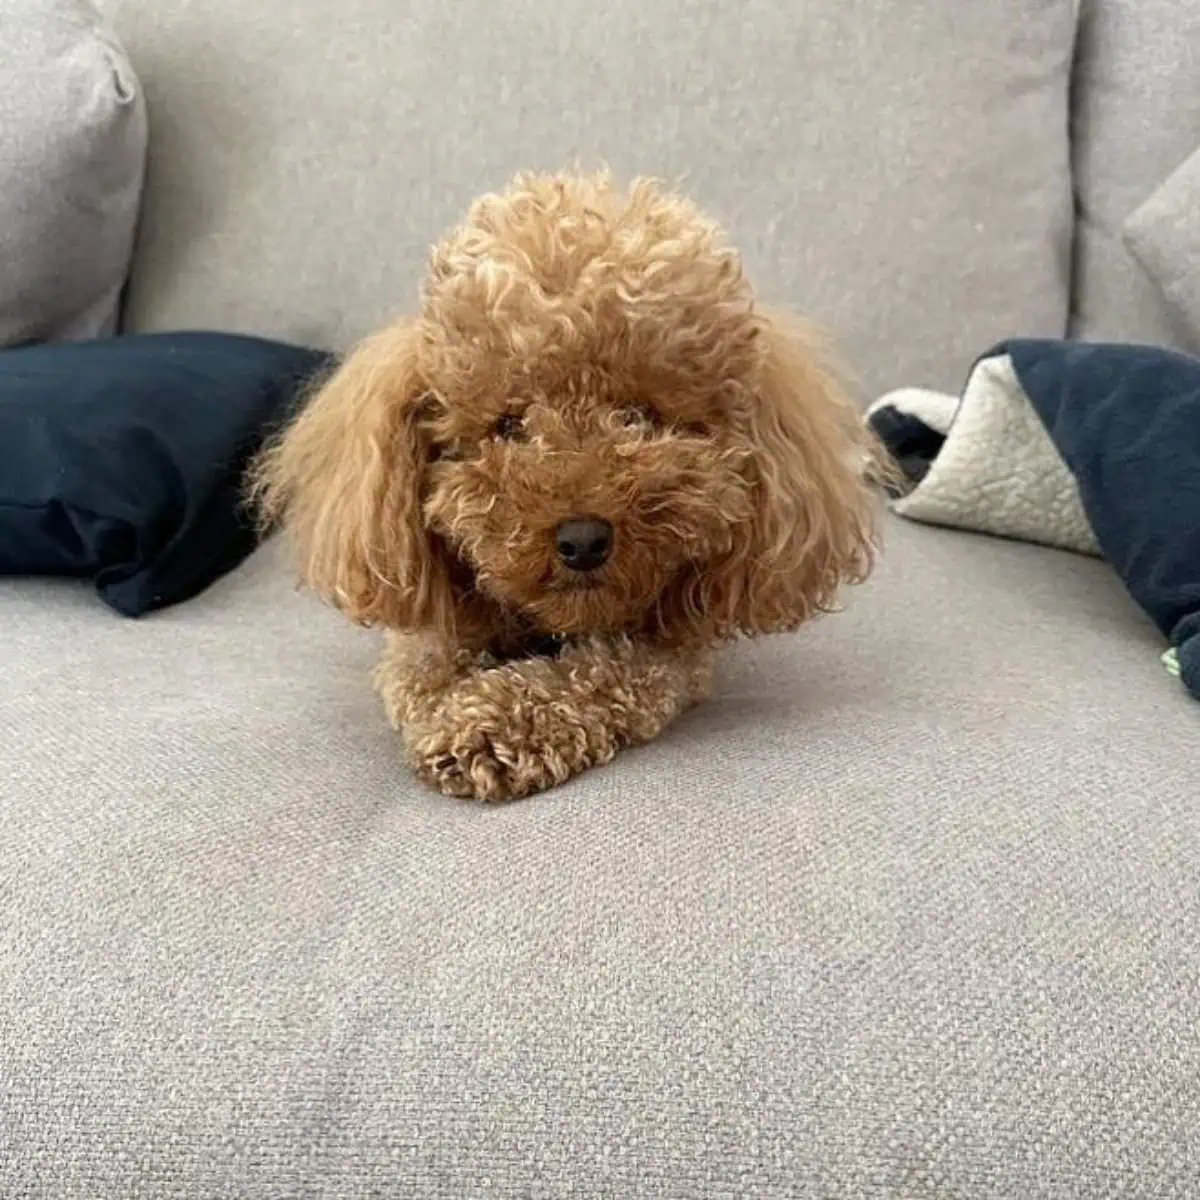 Poodle looks sad